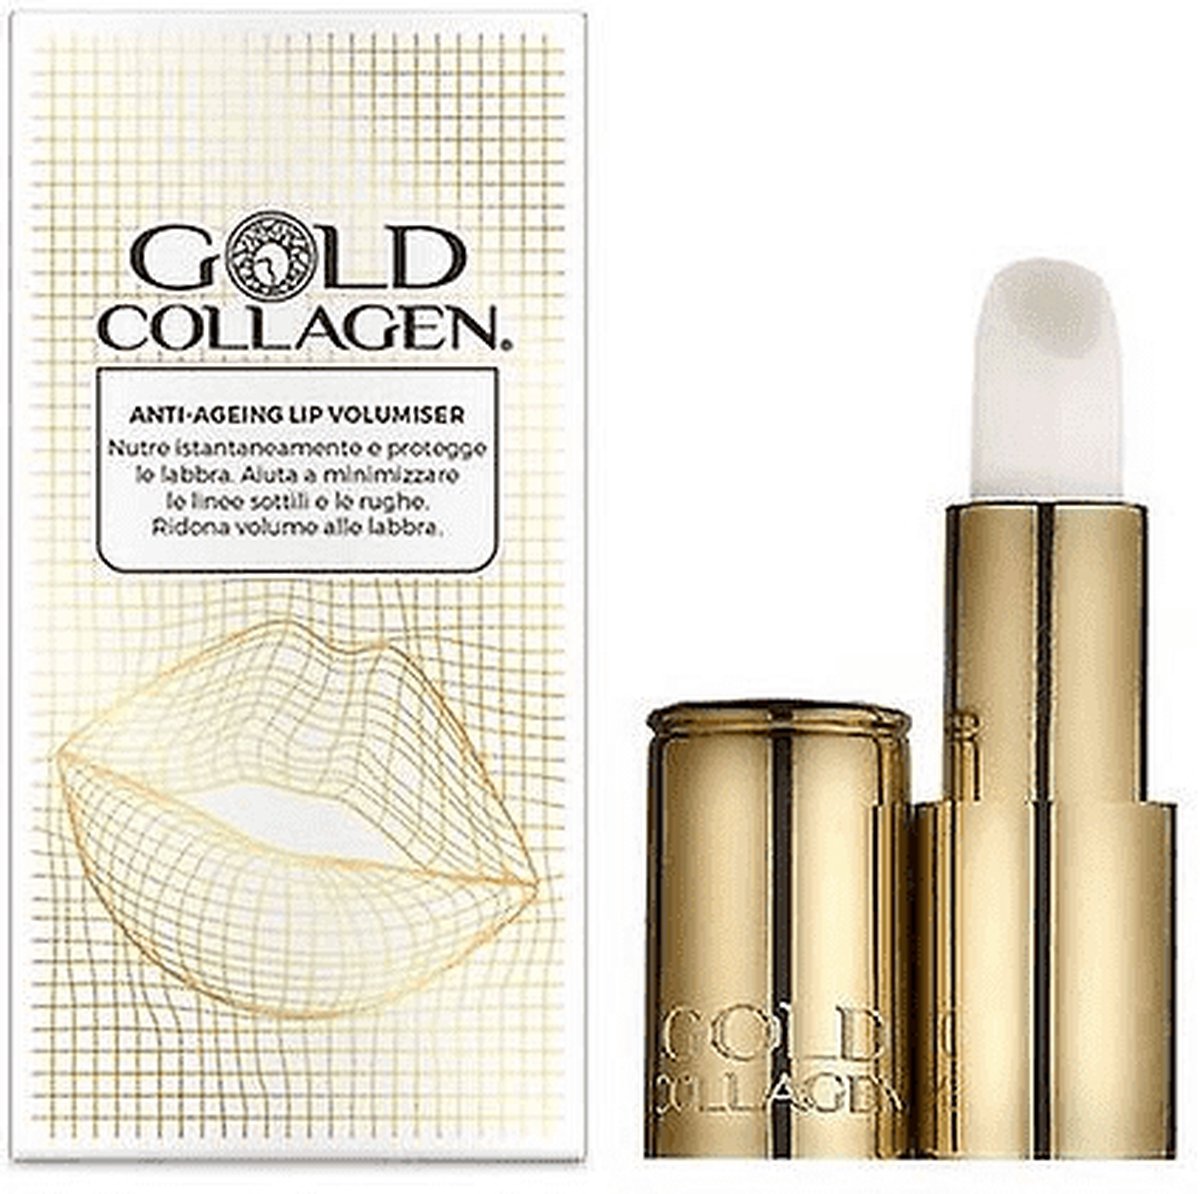 Gold Collagen Lip Volumiser : Geef je lippen meer volume. Deze rijke parelmoerachtige balsem bevat een krachtige mix van oligopeptiden om de collageensynthese te stimuleren voor vollere lippen.